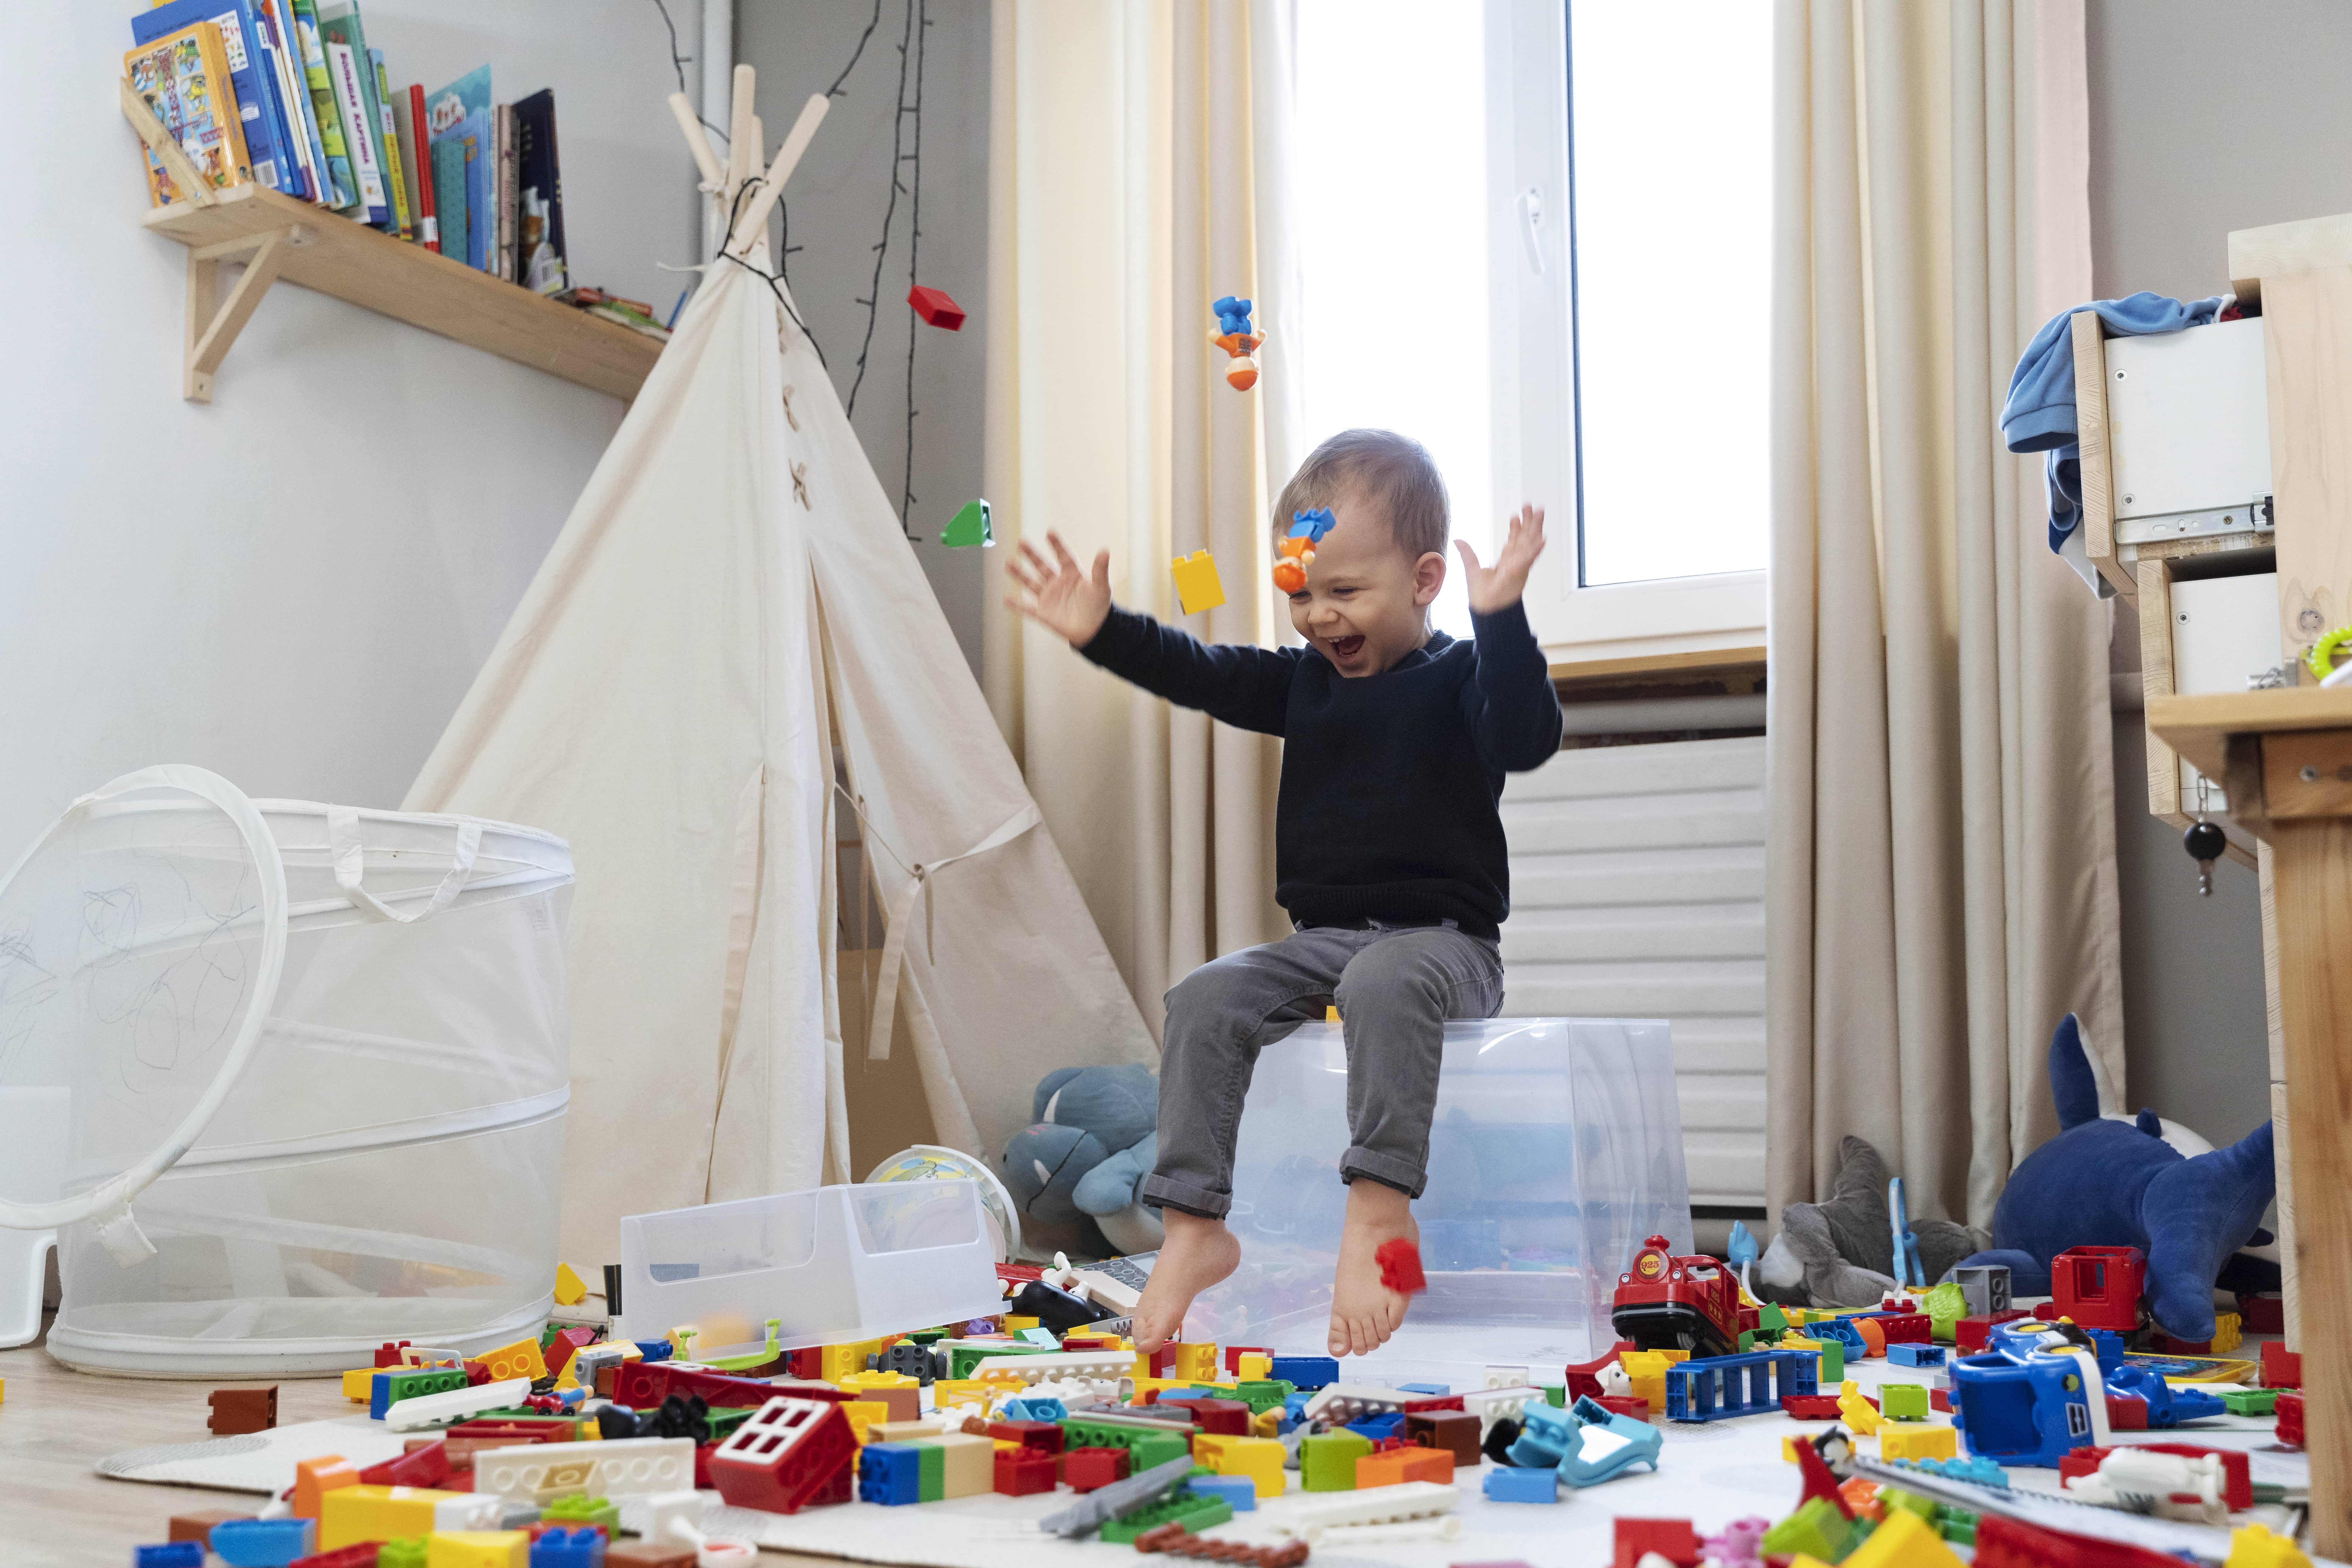 Bild von freepik zeigt ein glückliches Kind, das mit Lego spielt - ein Geist, den therapinum vermitteln möchte